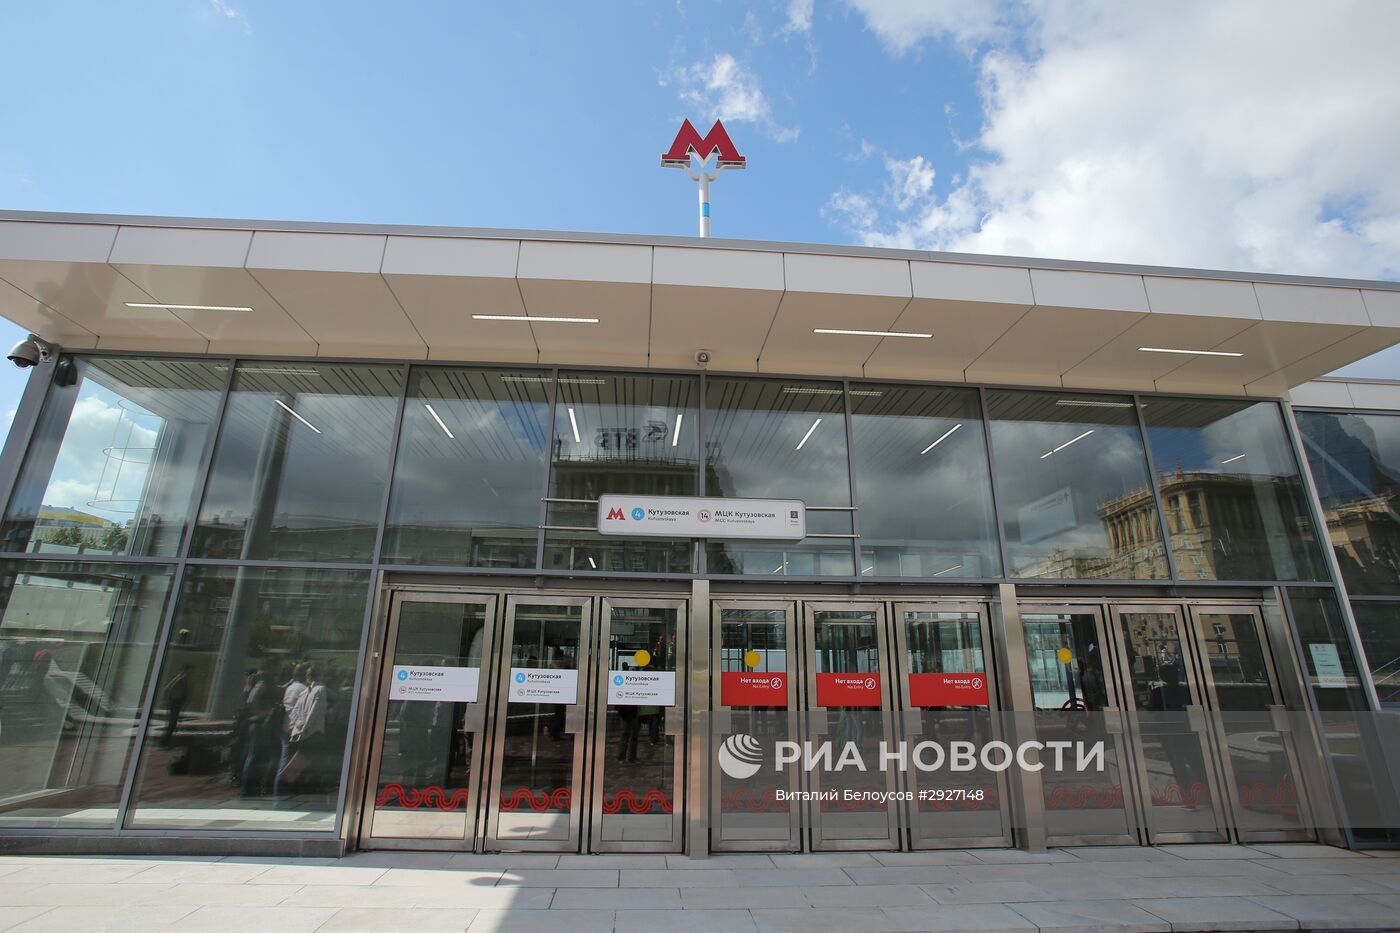 Открытие южного вестибюля станции метро "Кутузовская"